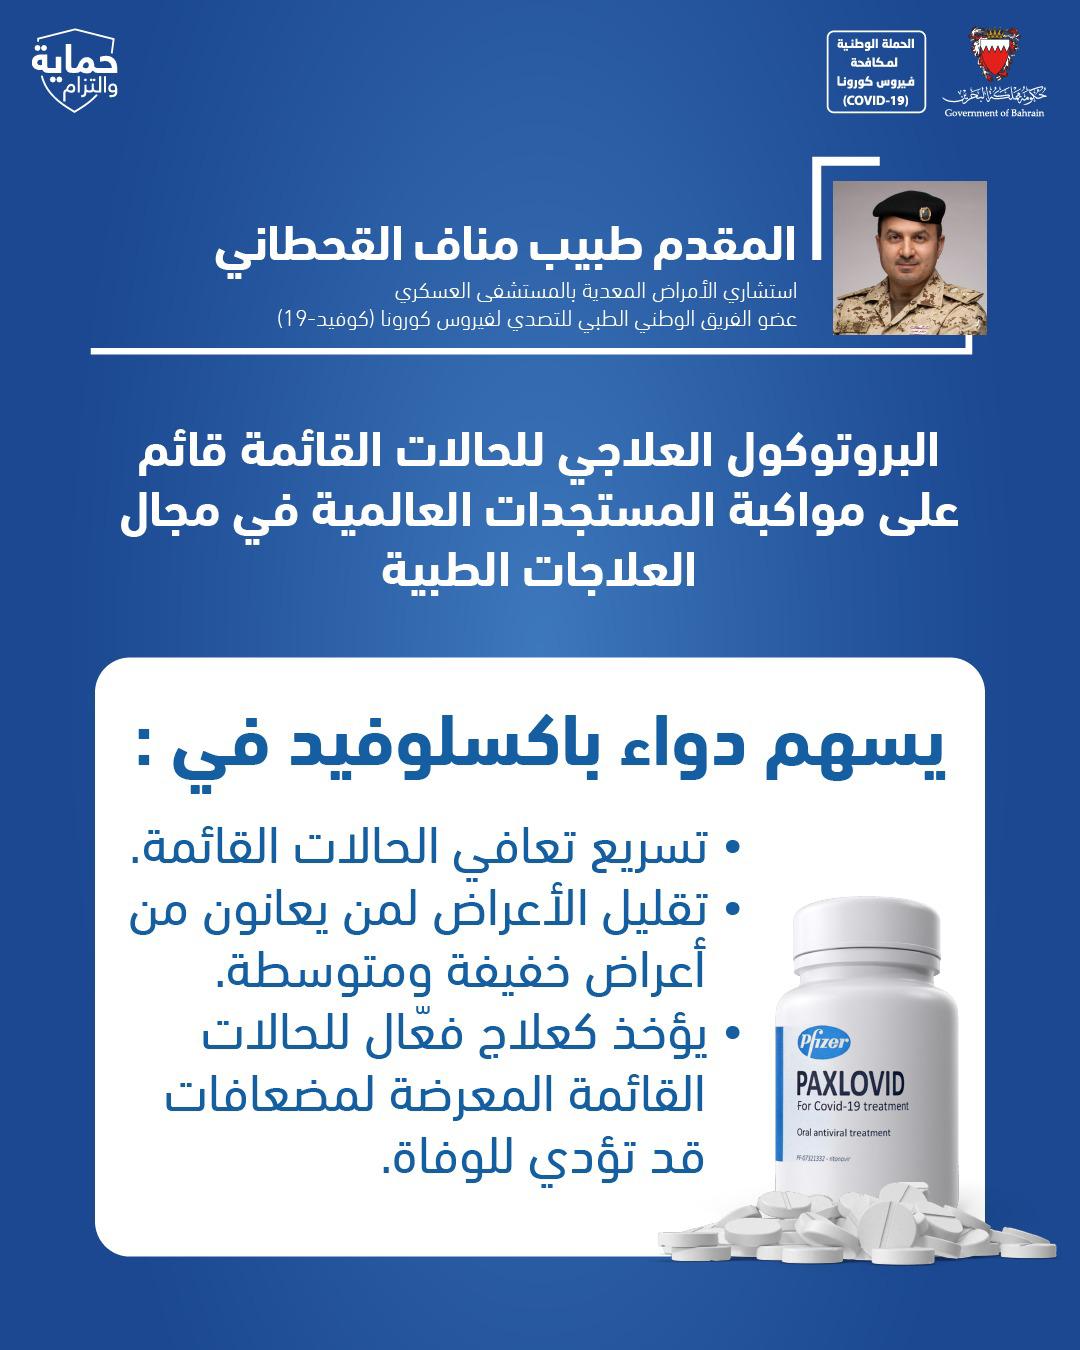 البحرين من أوائل الدول التي تجيز استخدام دواء "باكسلوفيد".. القحطاني: البروتوكول العلاجي للحالات القائمة قائم على مواكبة المستجدات العالمية في مجال العلاجات الطبية